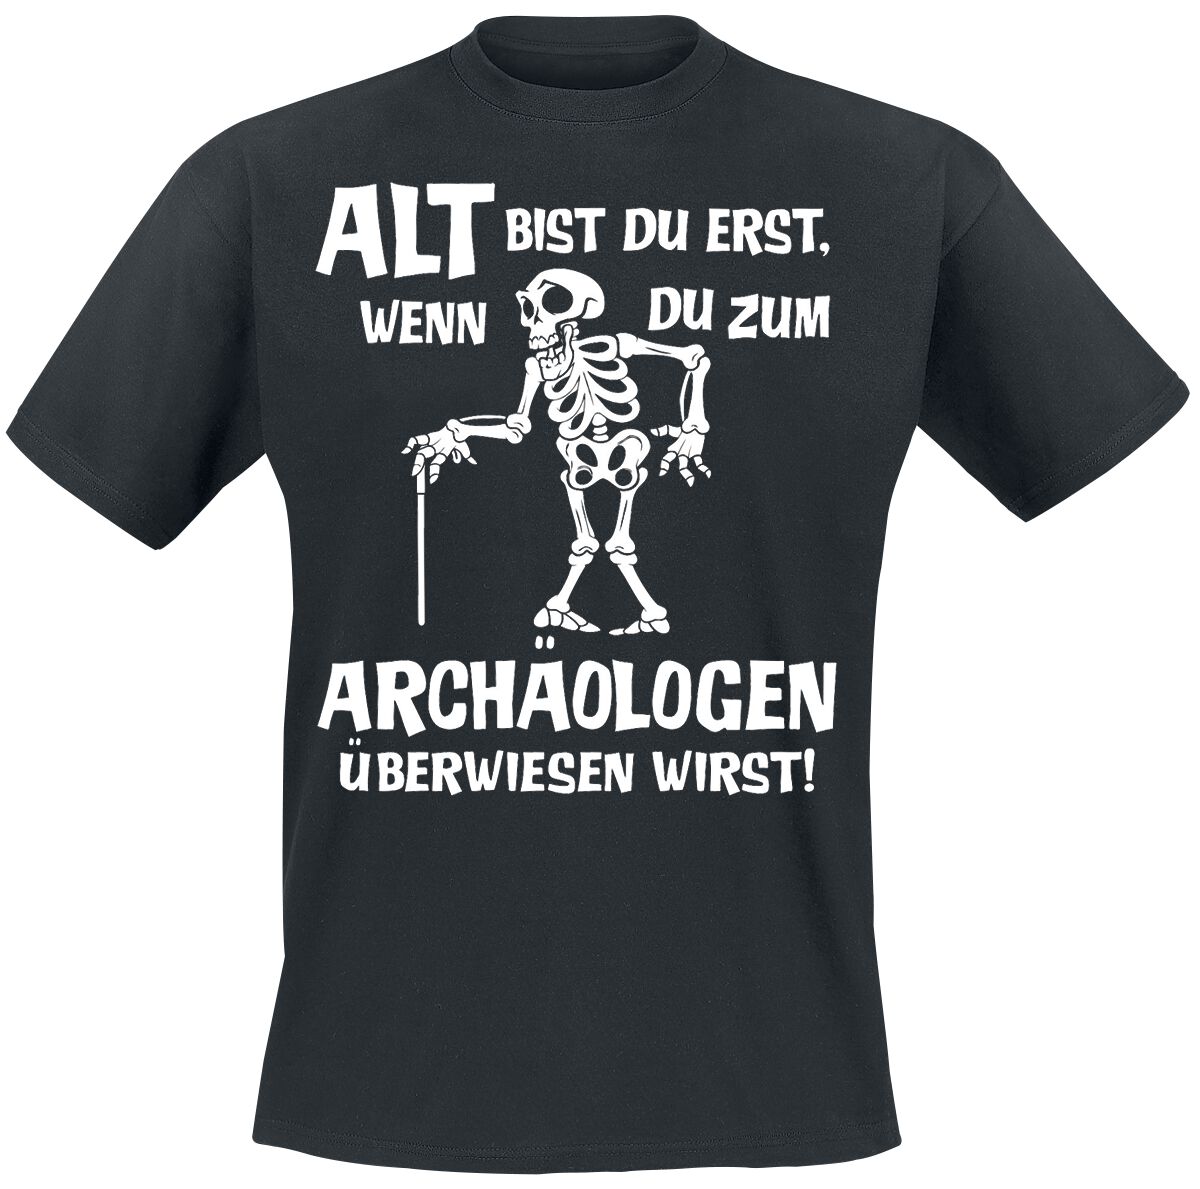 Sprüche T-Shirt - Alt bist du erst, wenn du zum Archäologen überwiesen wirst! - M bis 4XL - für Männer - Größe M - schwarz